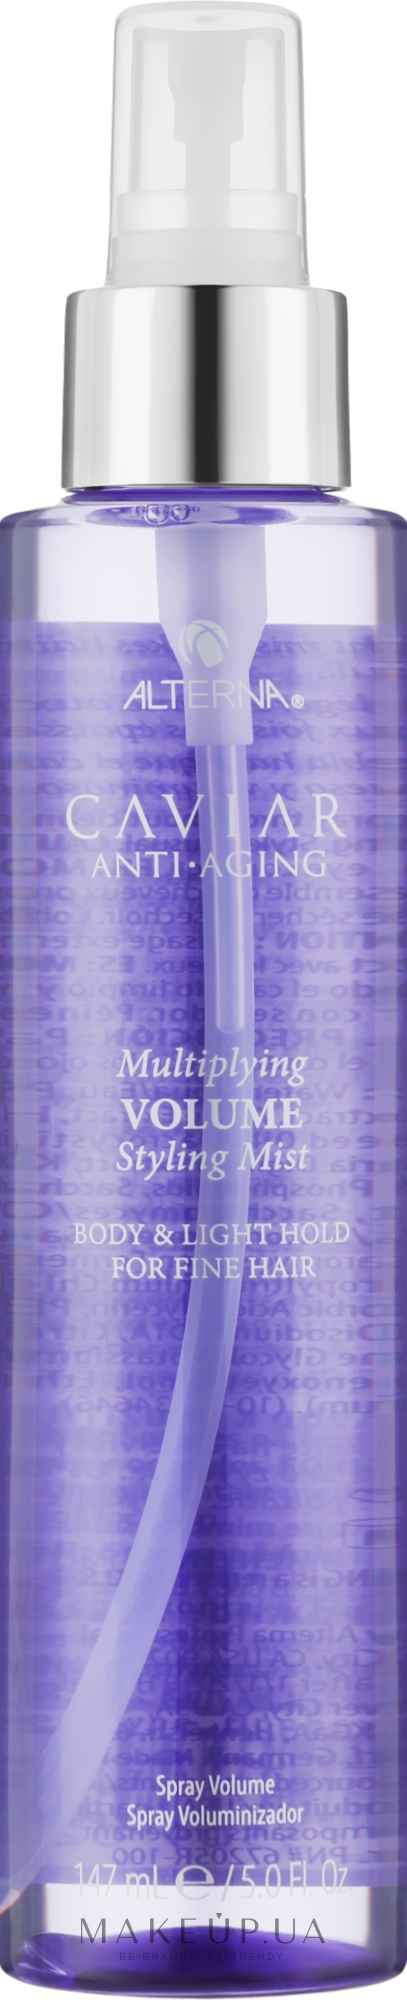 Спрей для об'єму волосся - Alterna Caviar Anti-Aging Multiplying Volume Styling Mist — фото 147ml